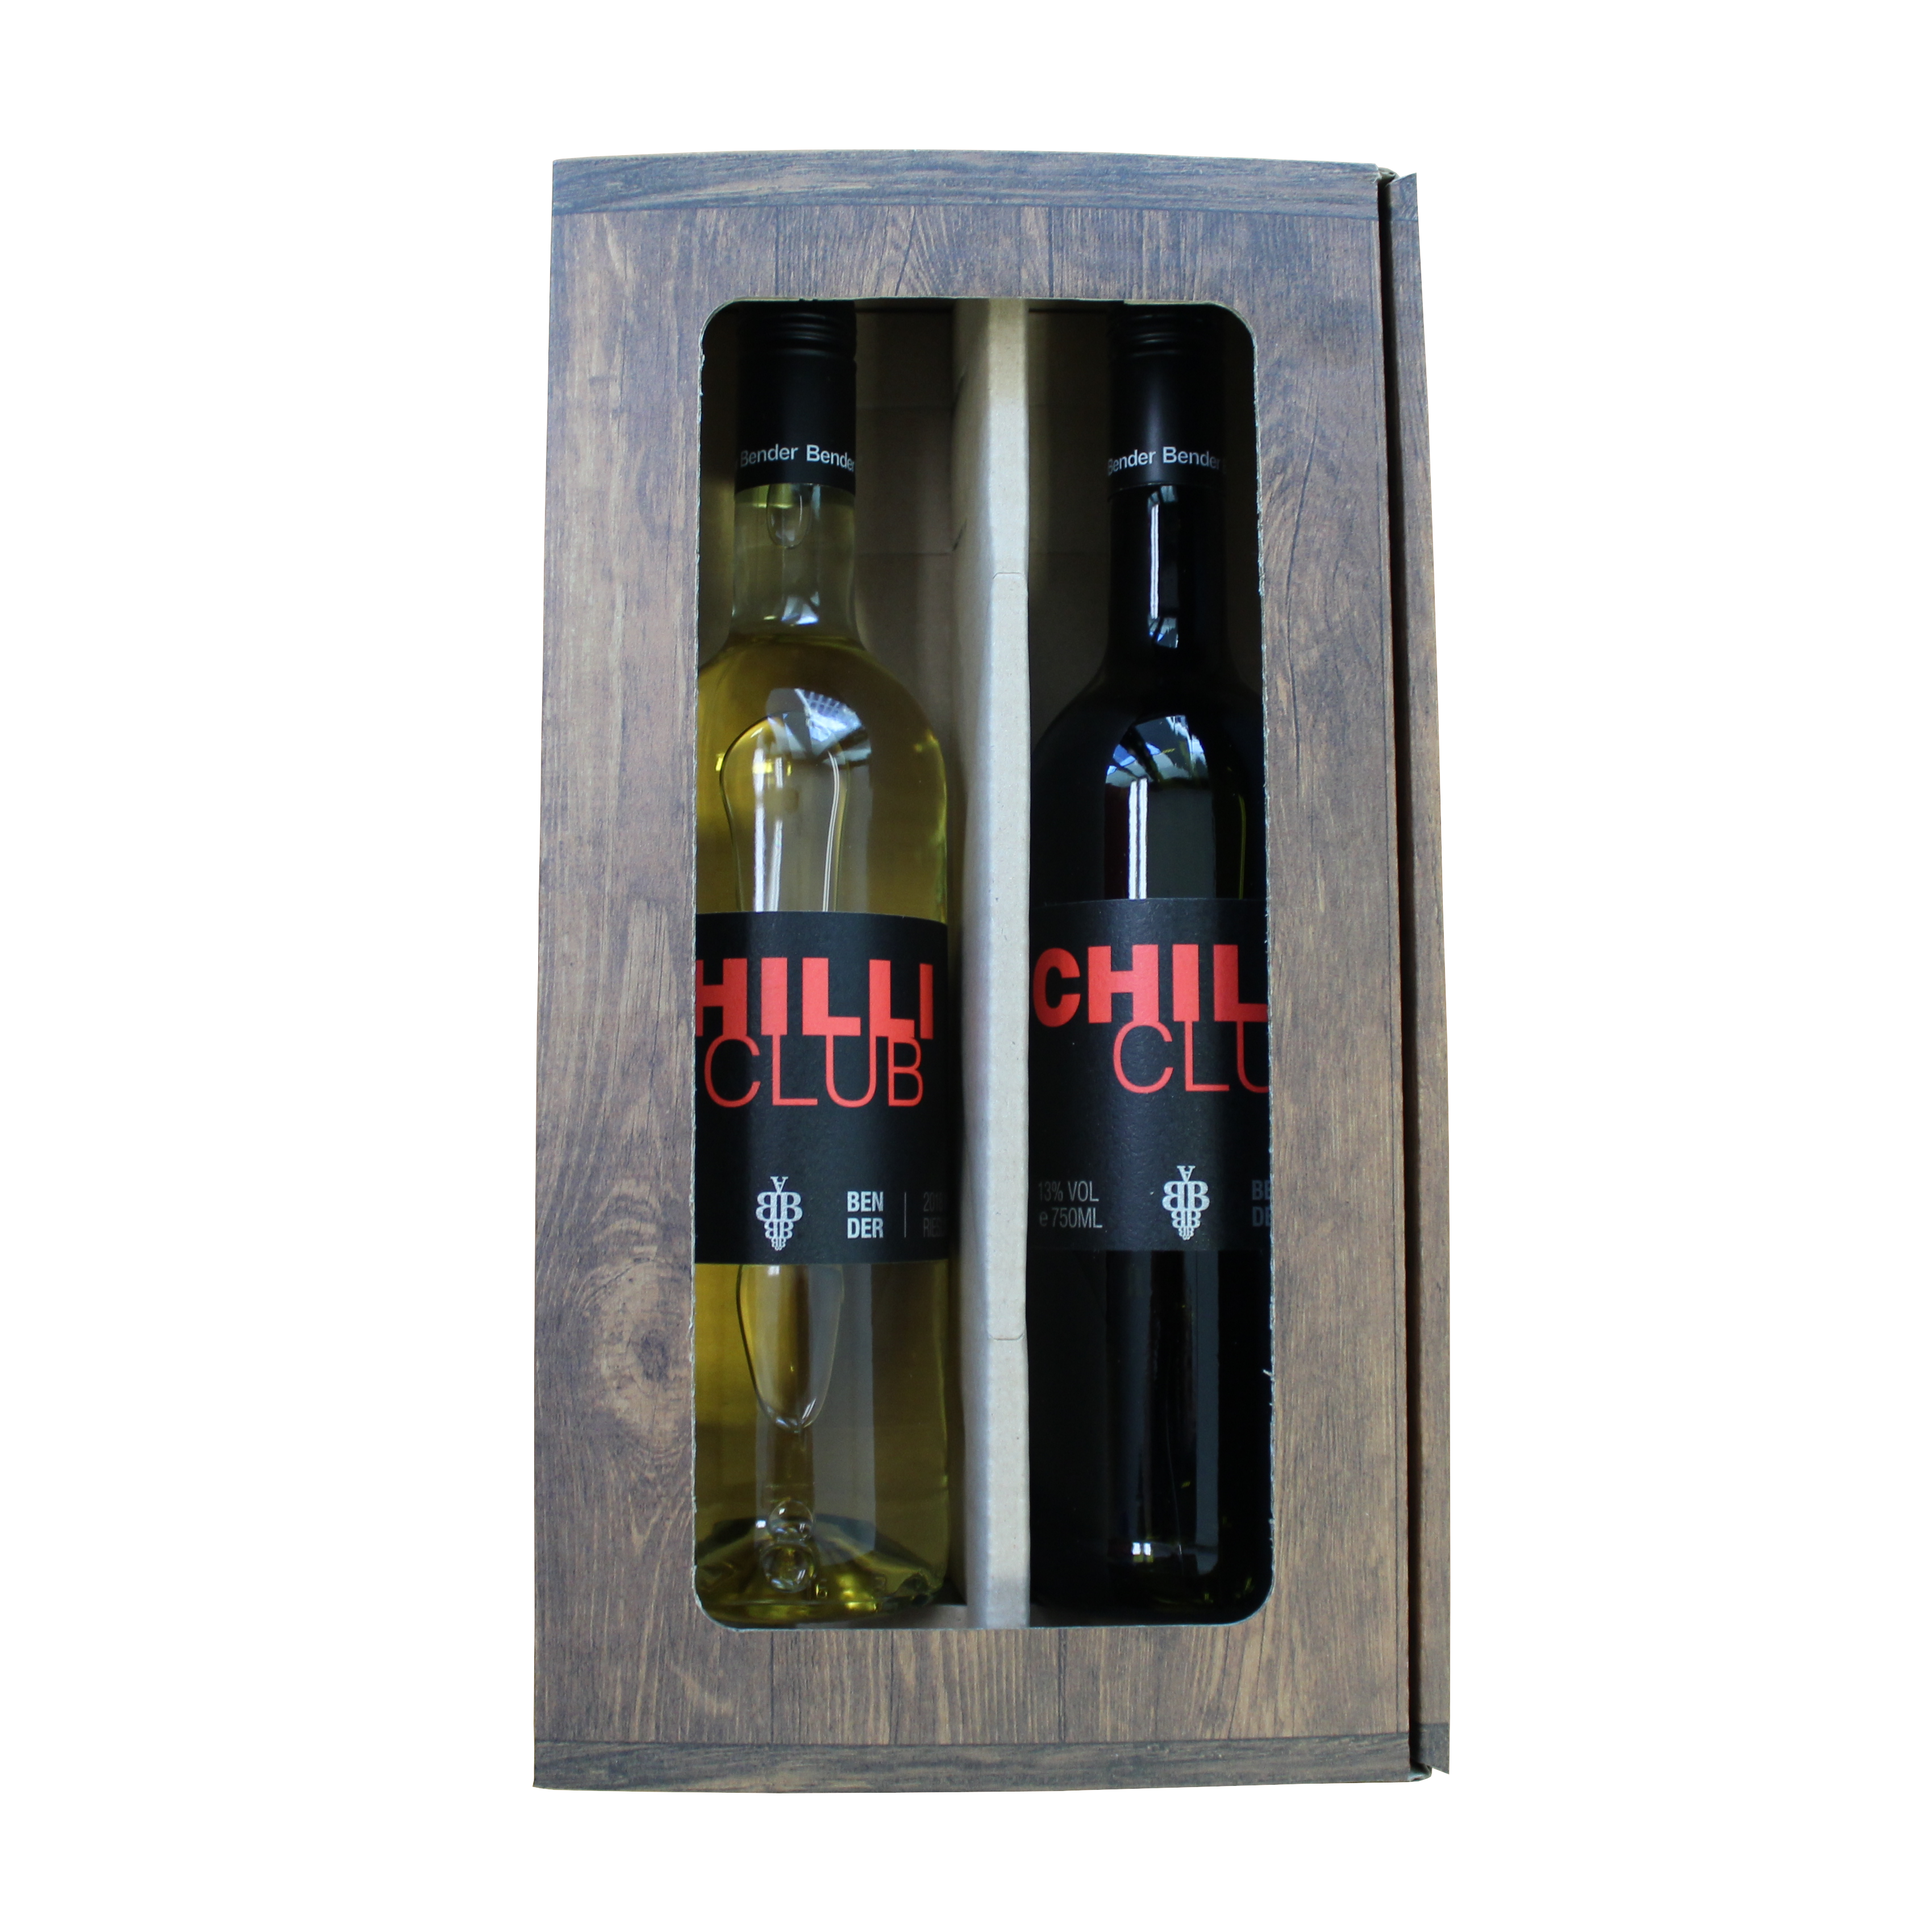 CHILLI CLUB Wine Box